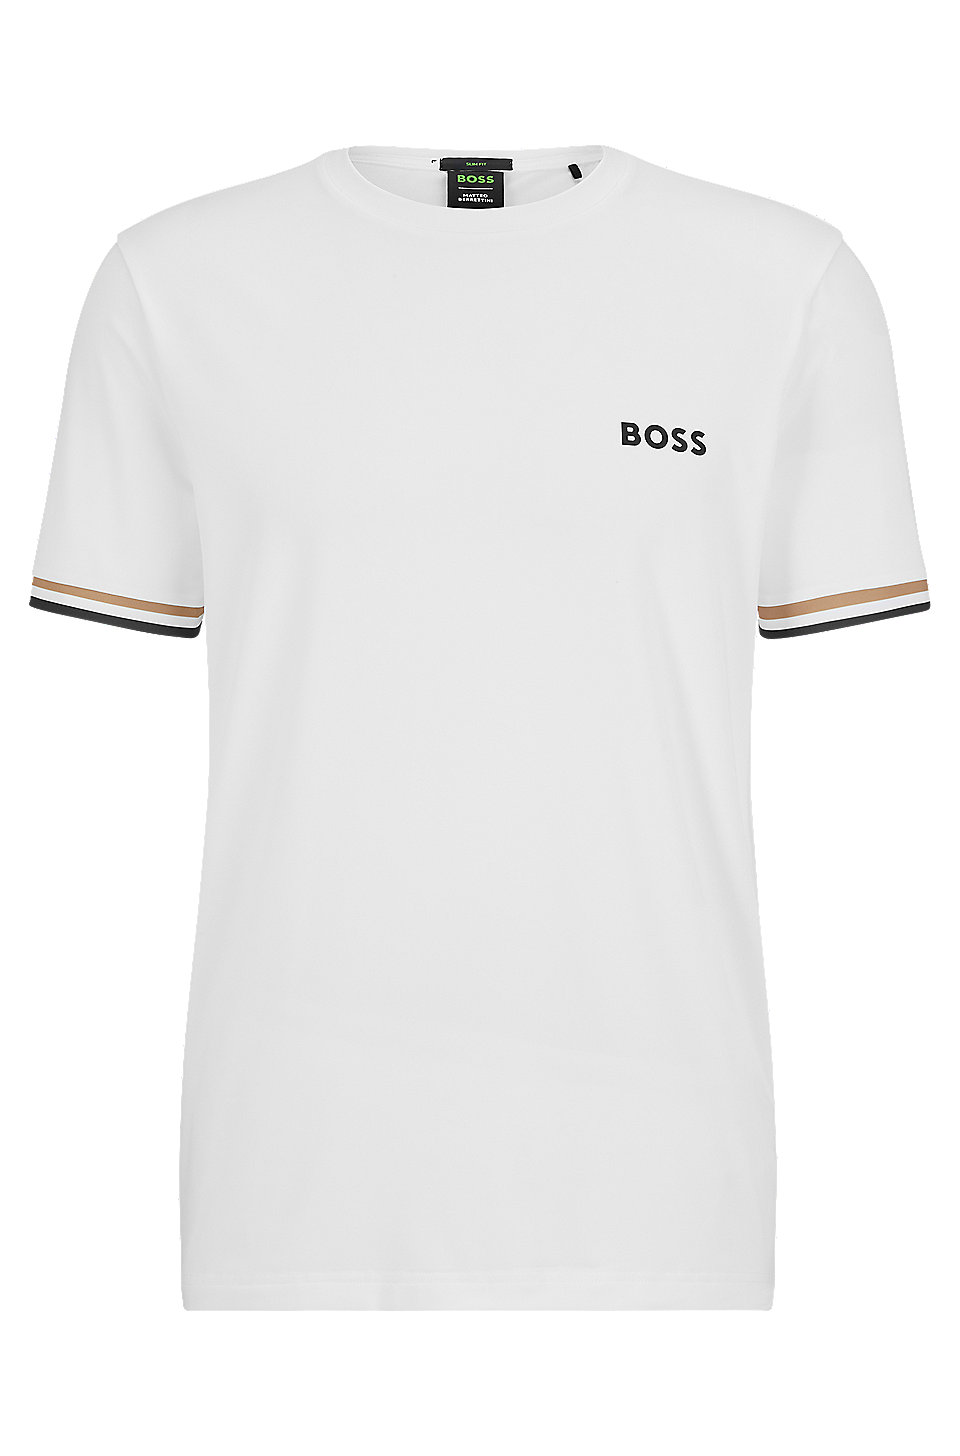 BOSS - BOSS x Matteo Berrettini logo crew-neck T-shirt with signature ...